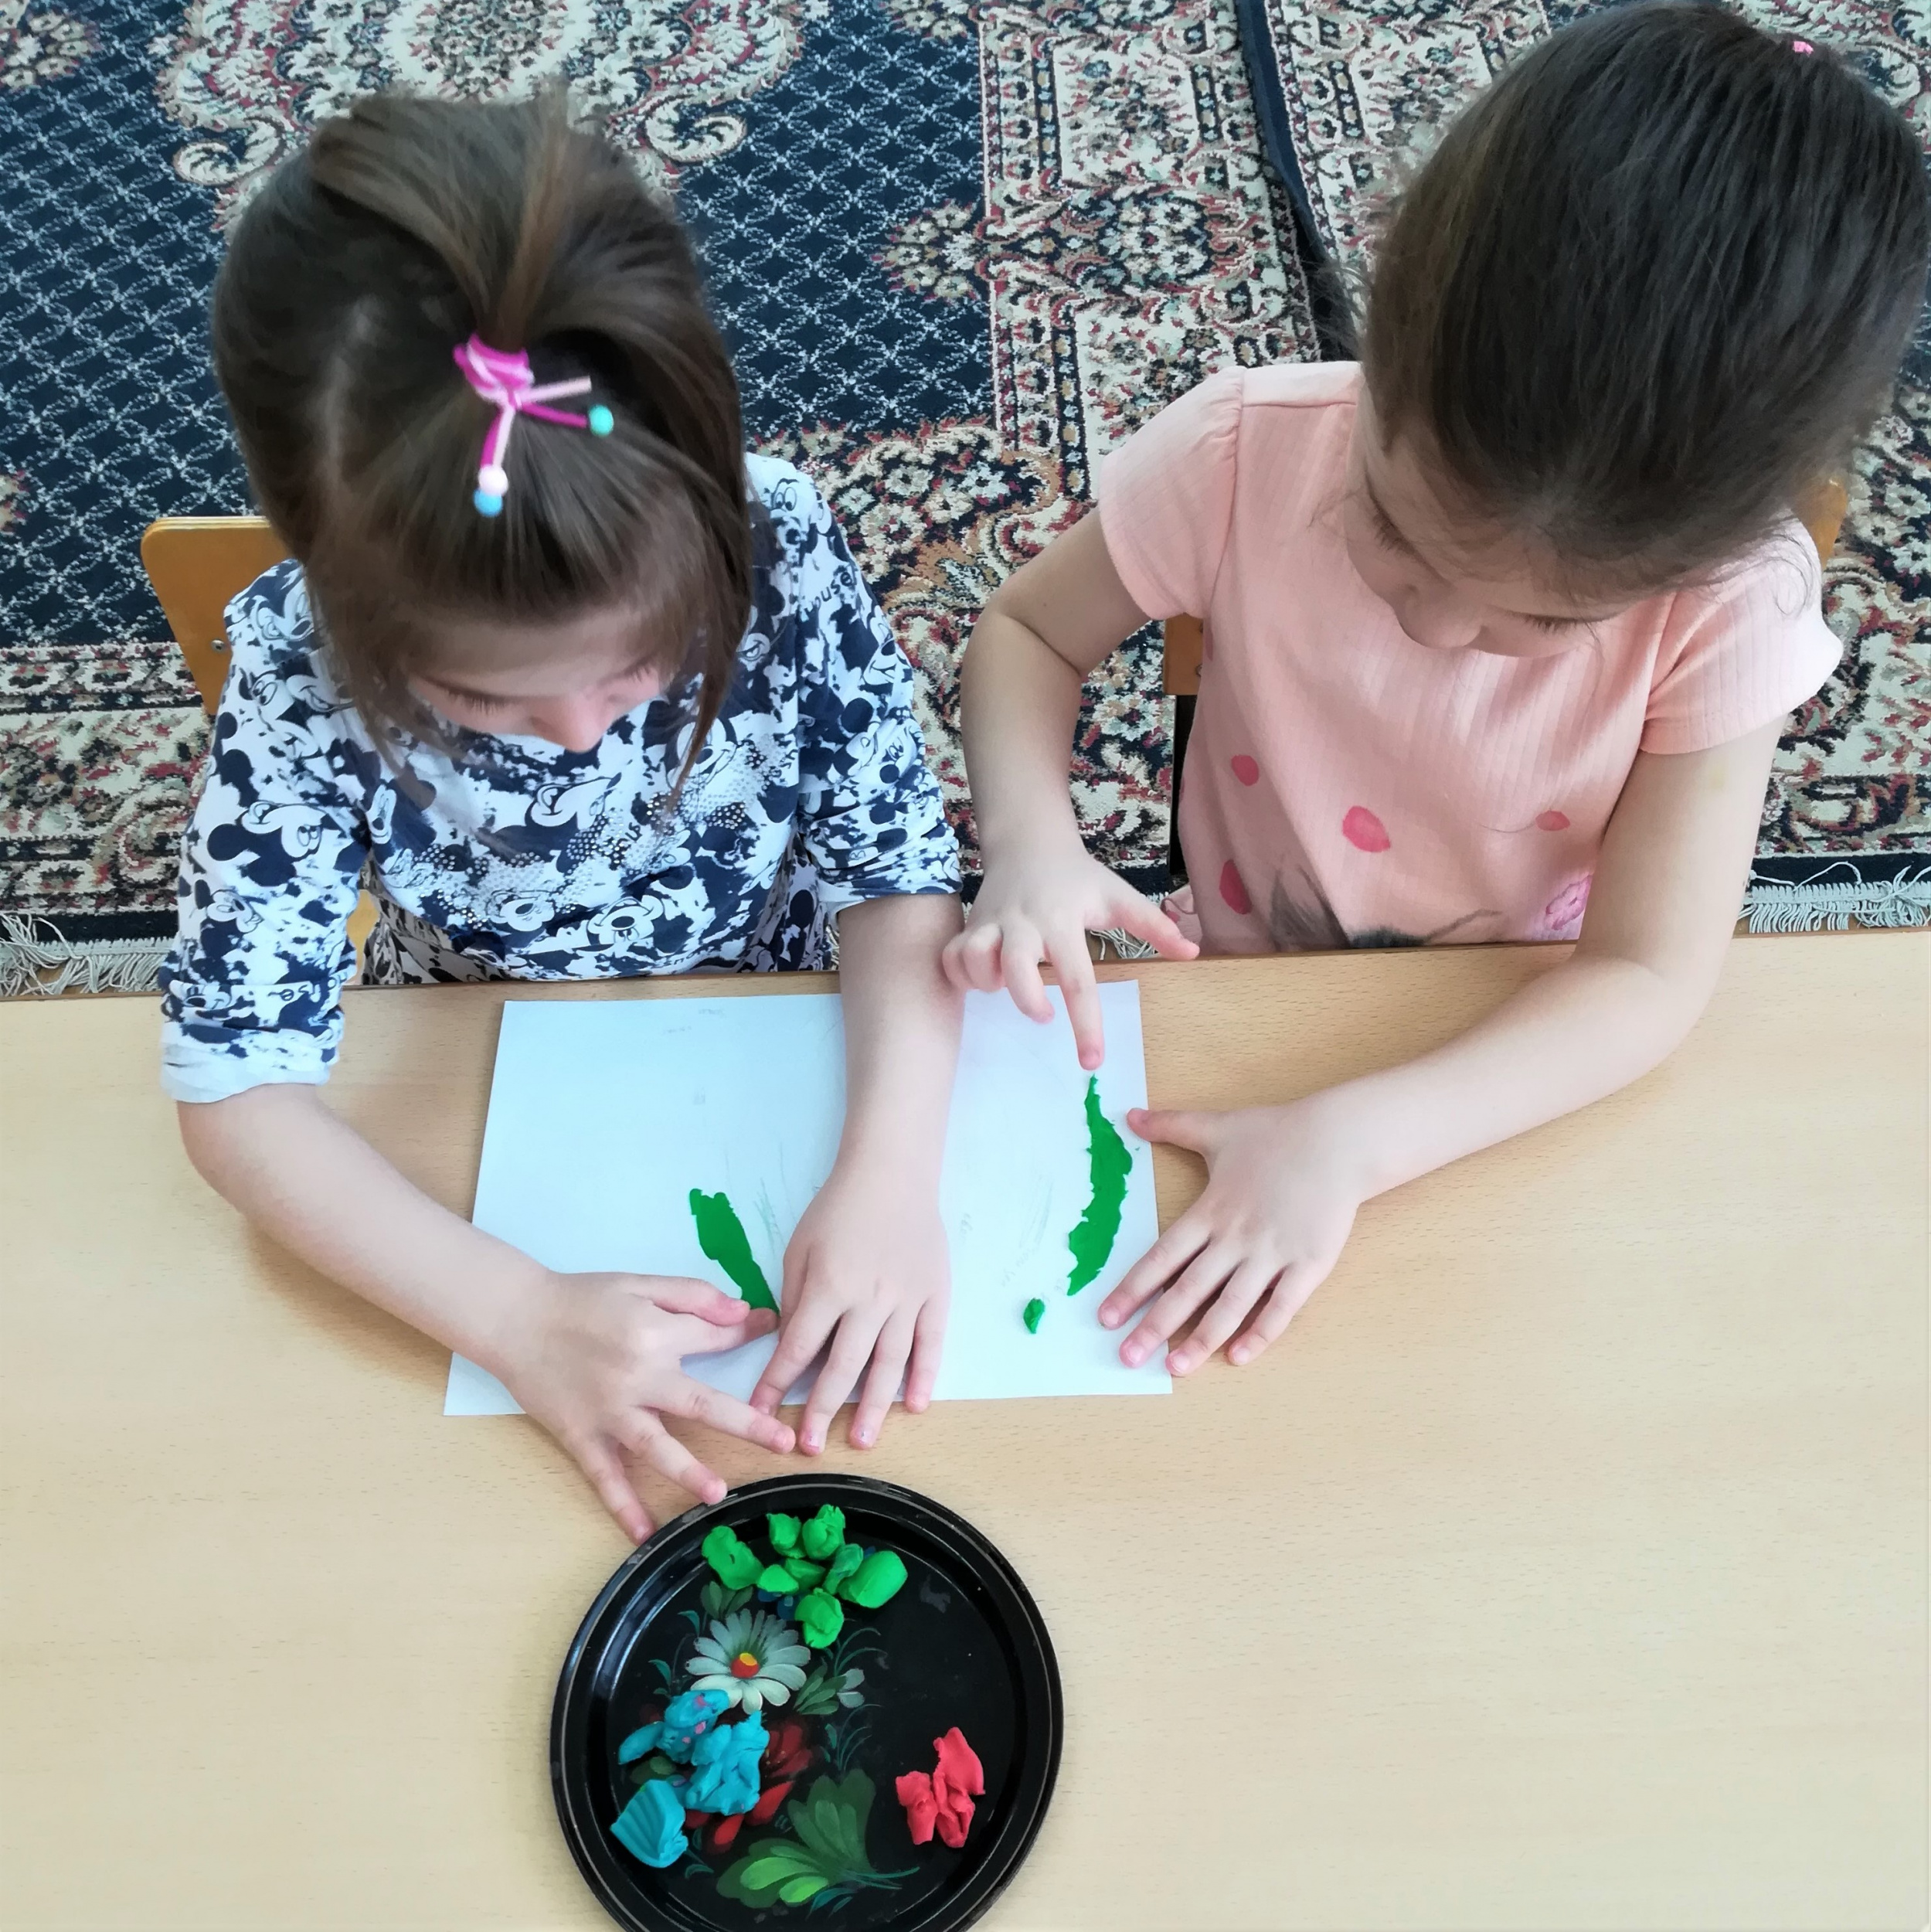 Детские кружки и секции в Одессе